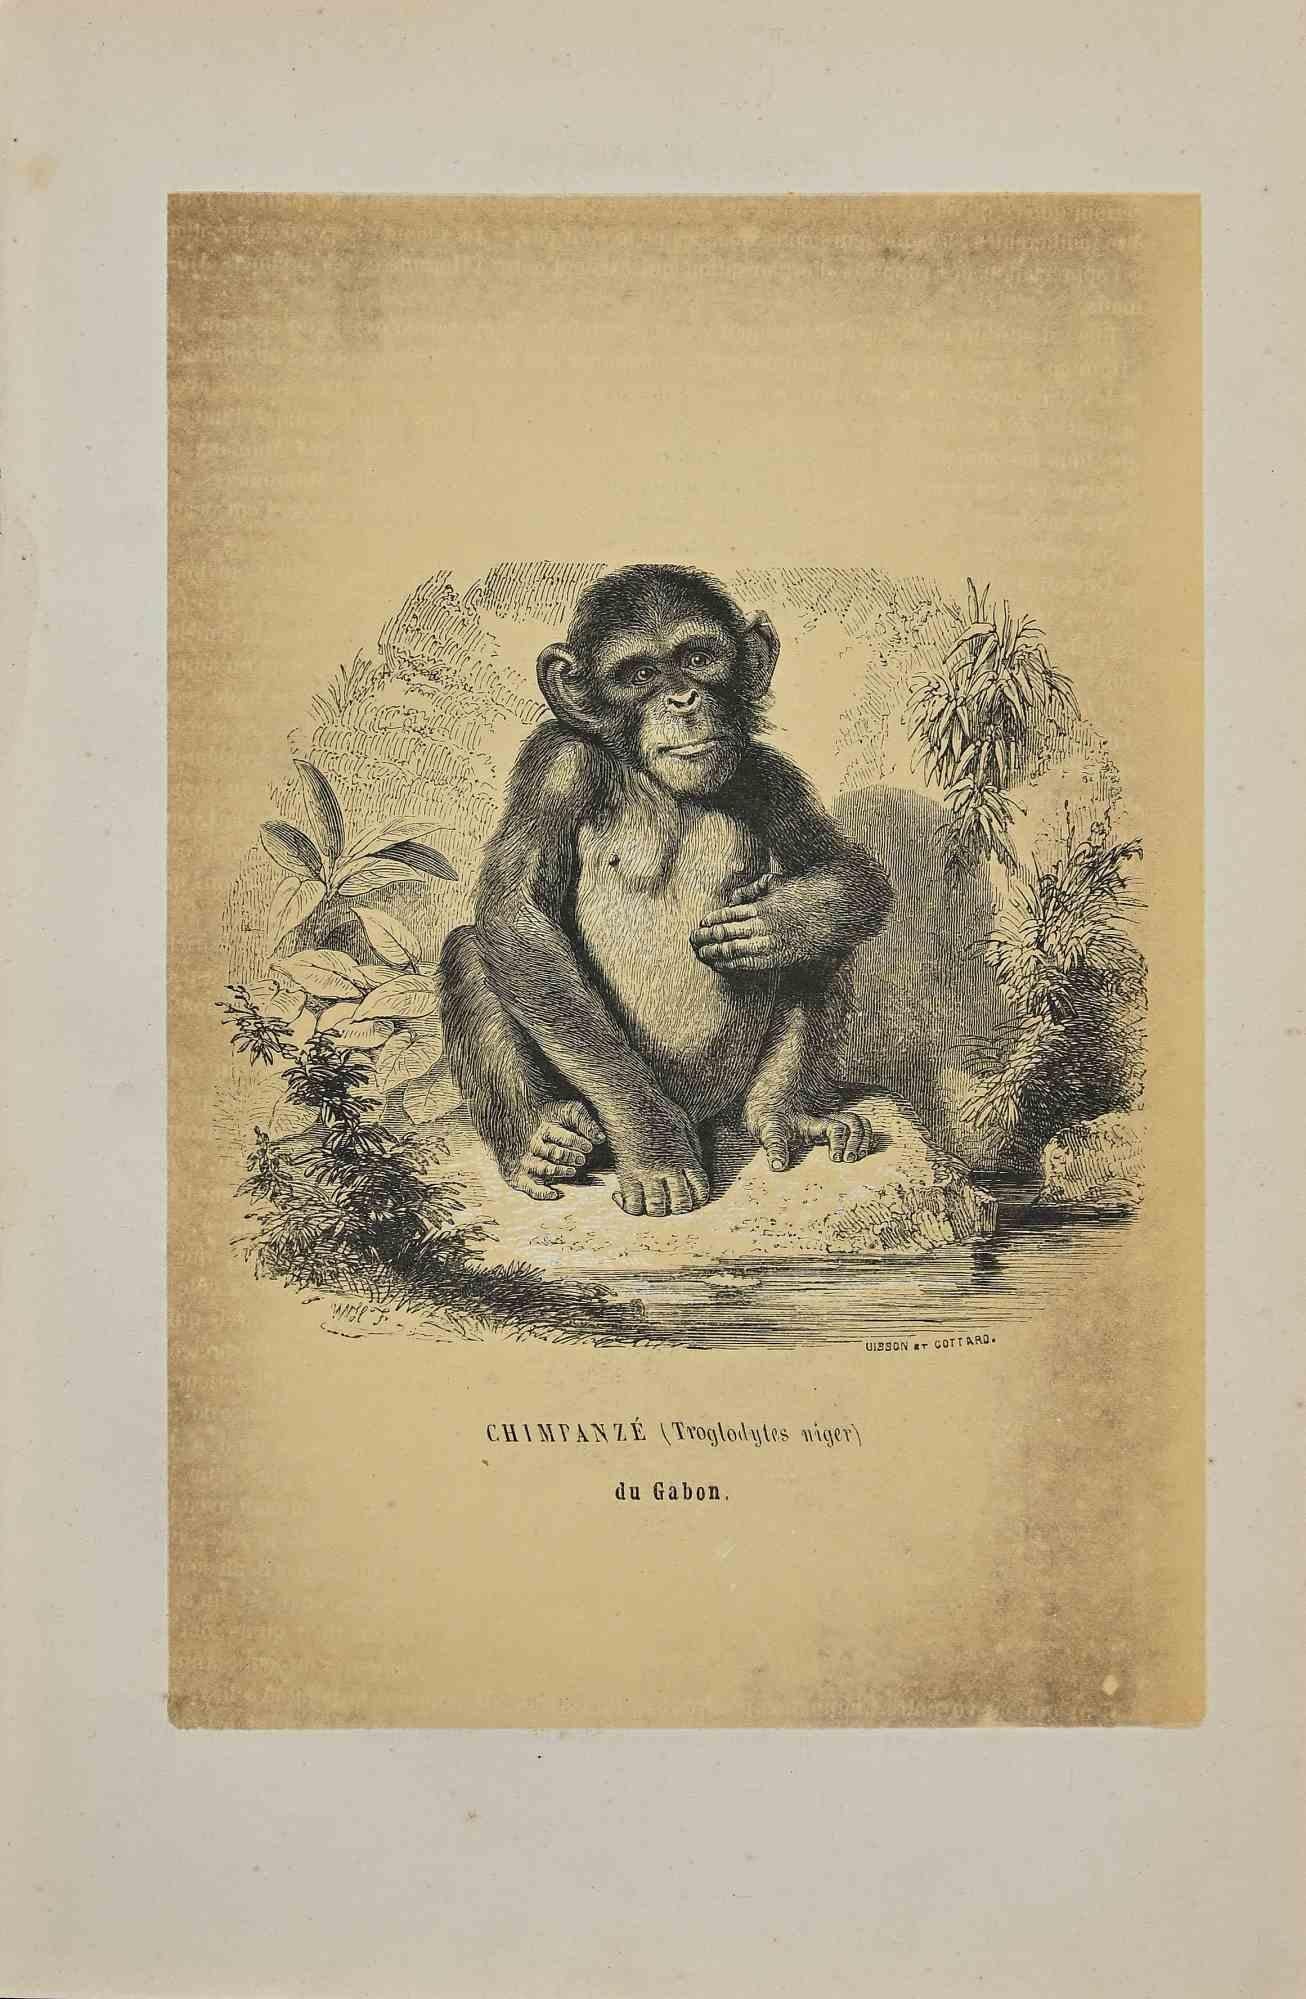 Chimpanzé est une lithographie originale sur papier couleur ivoire, réalisée par Paul Gervais (1816-1879). L'œuvre est tirée de la série "Les Trois Règnes de la Nature", et a été publiée en 1854.

Bonnes conditions à l'exception de quelques